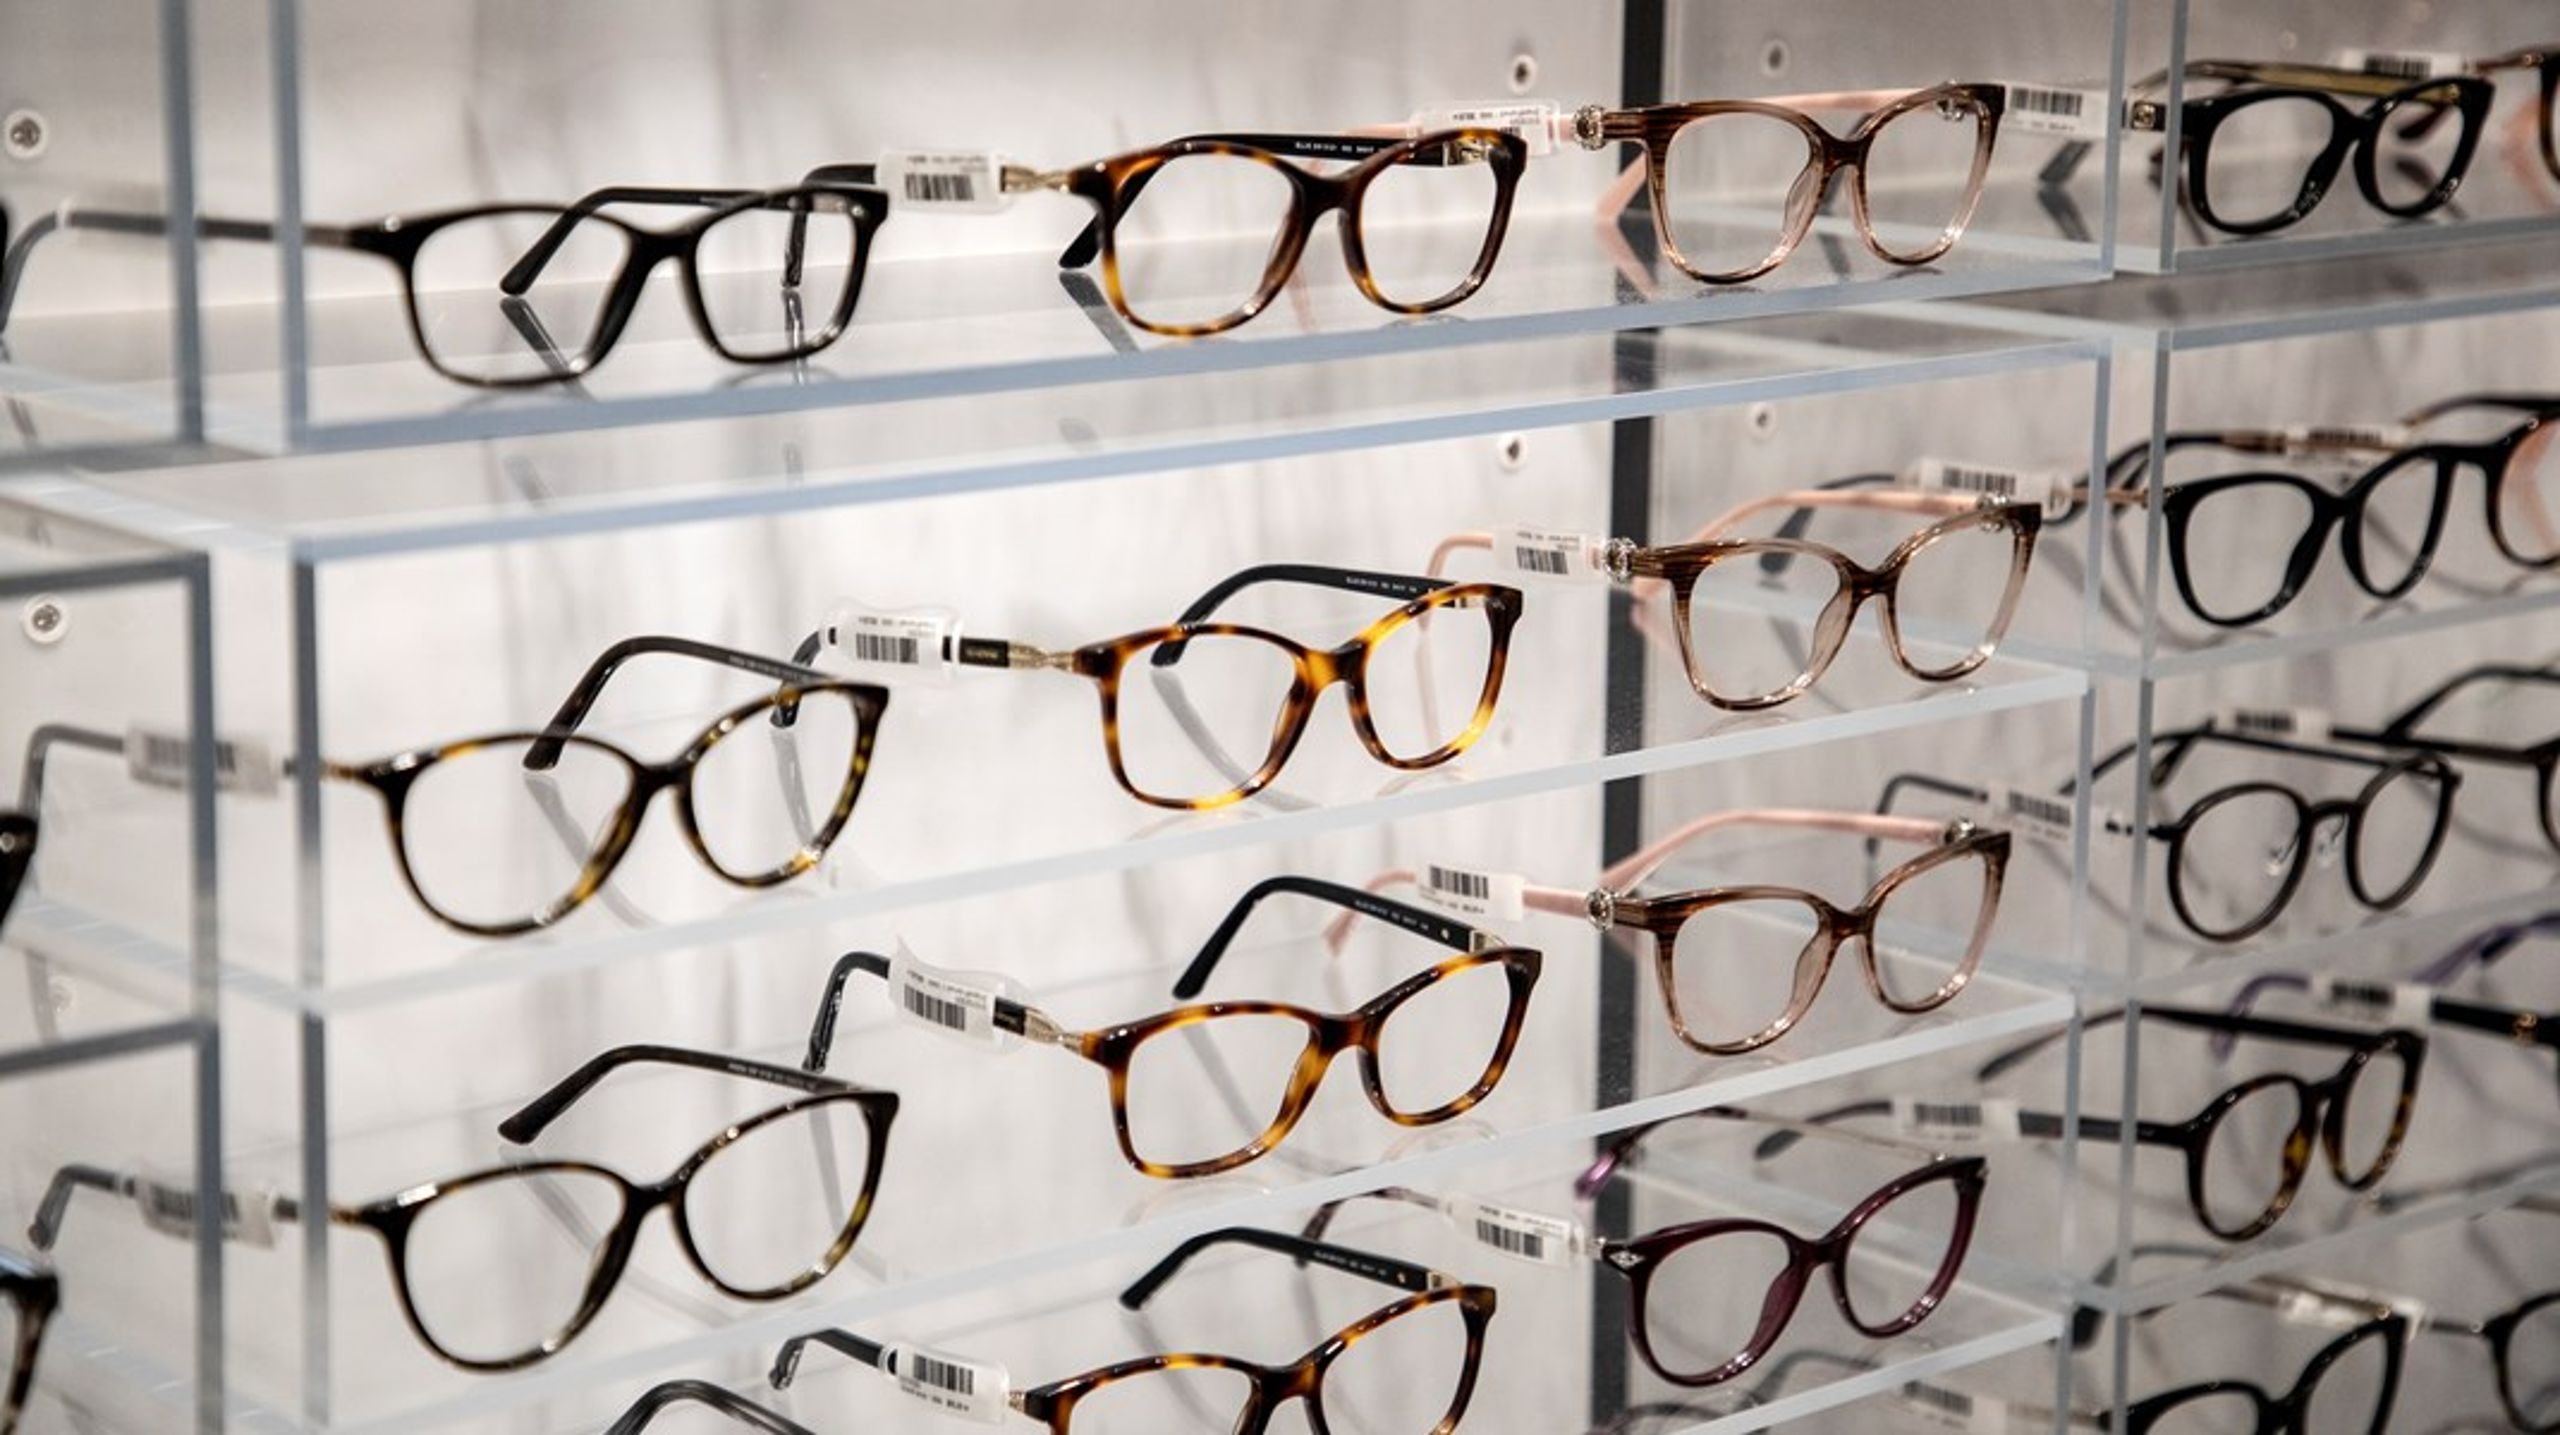 I dag riskerar den som behöver glasögon att bli undersökt av en säljare utan tillräckliga kunskaper, skriver debattörerna.